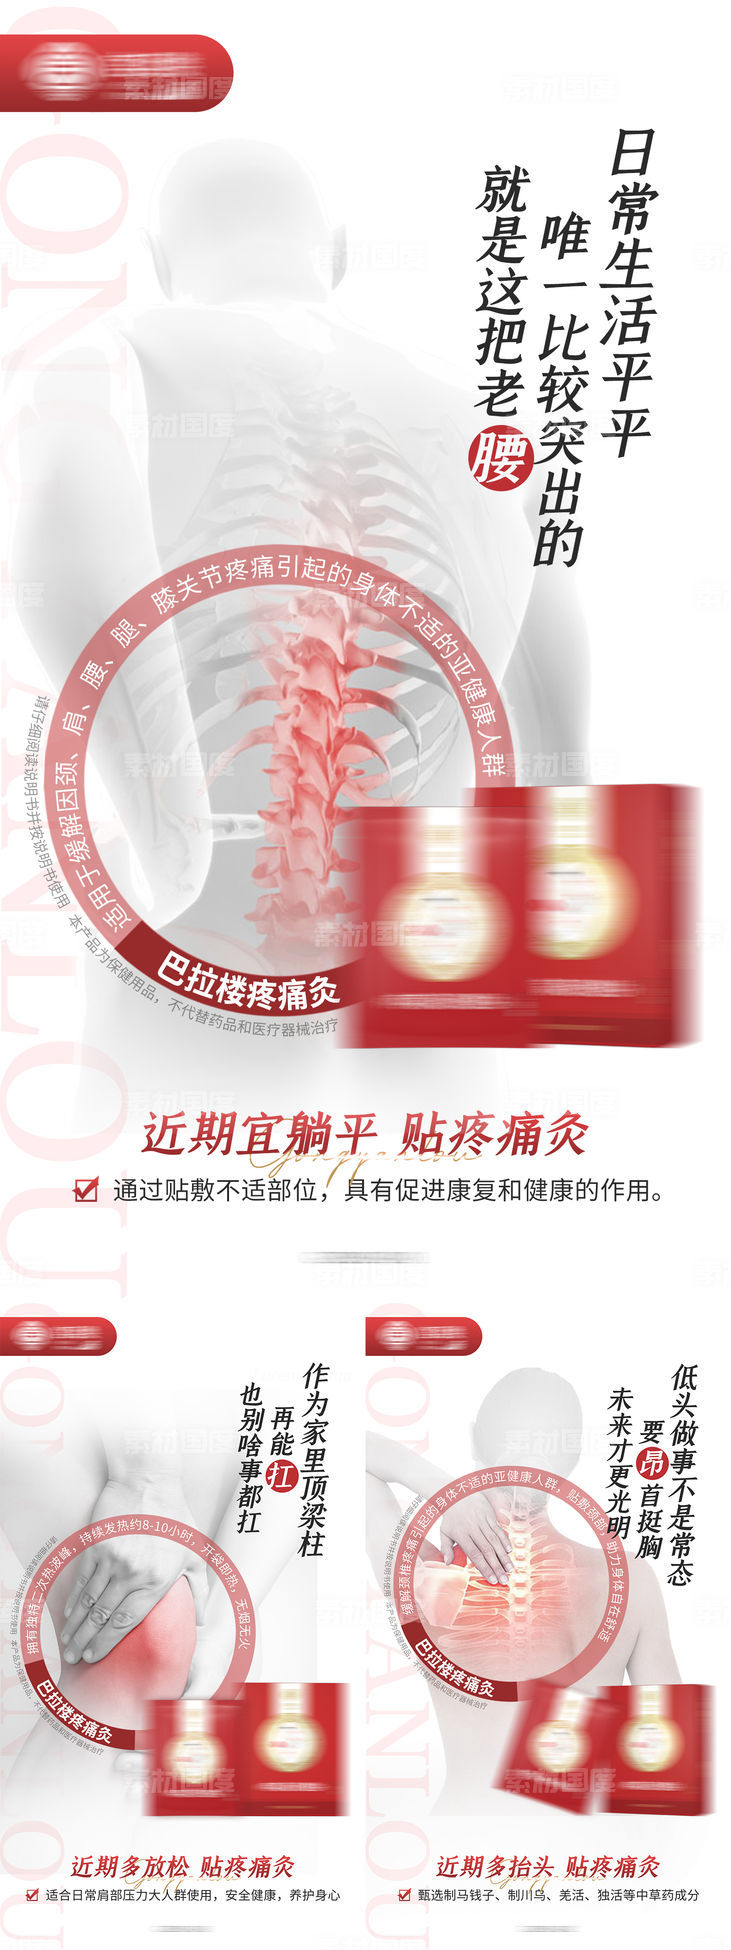 中式腰部关节养护养生产品灸贴海报